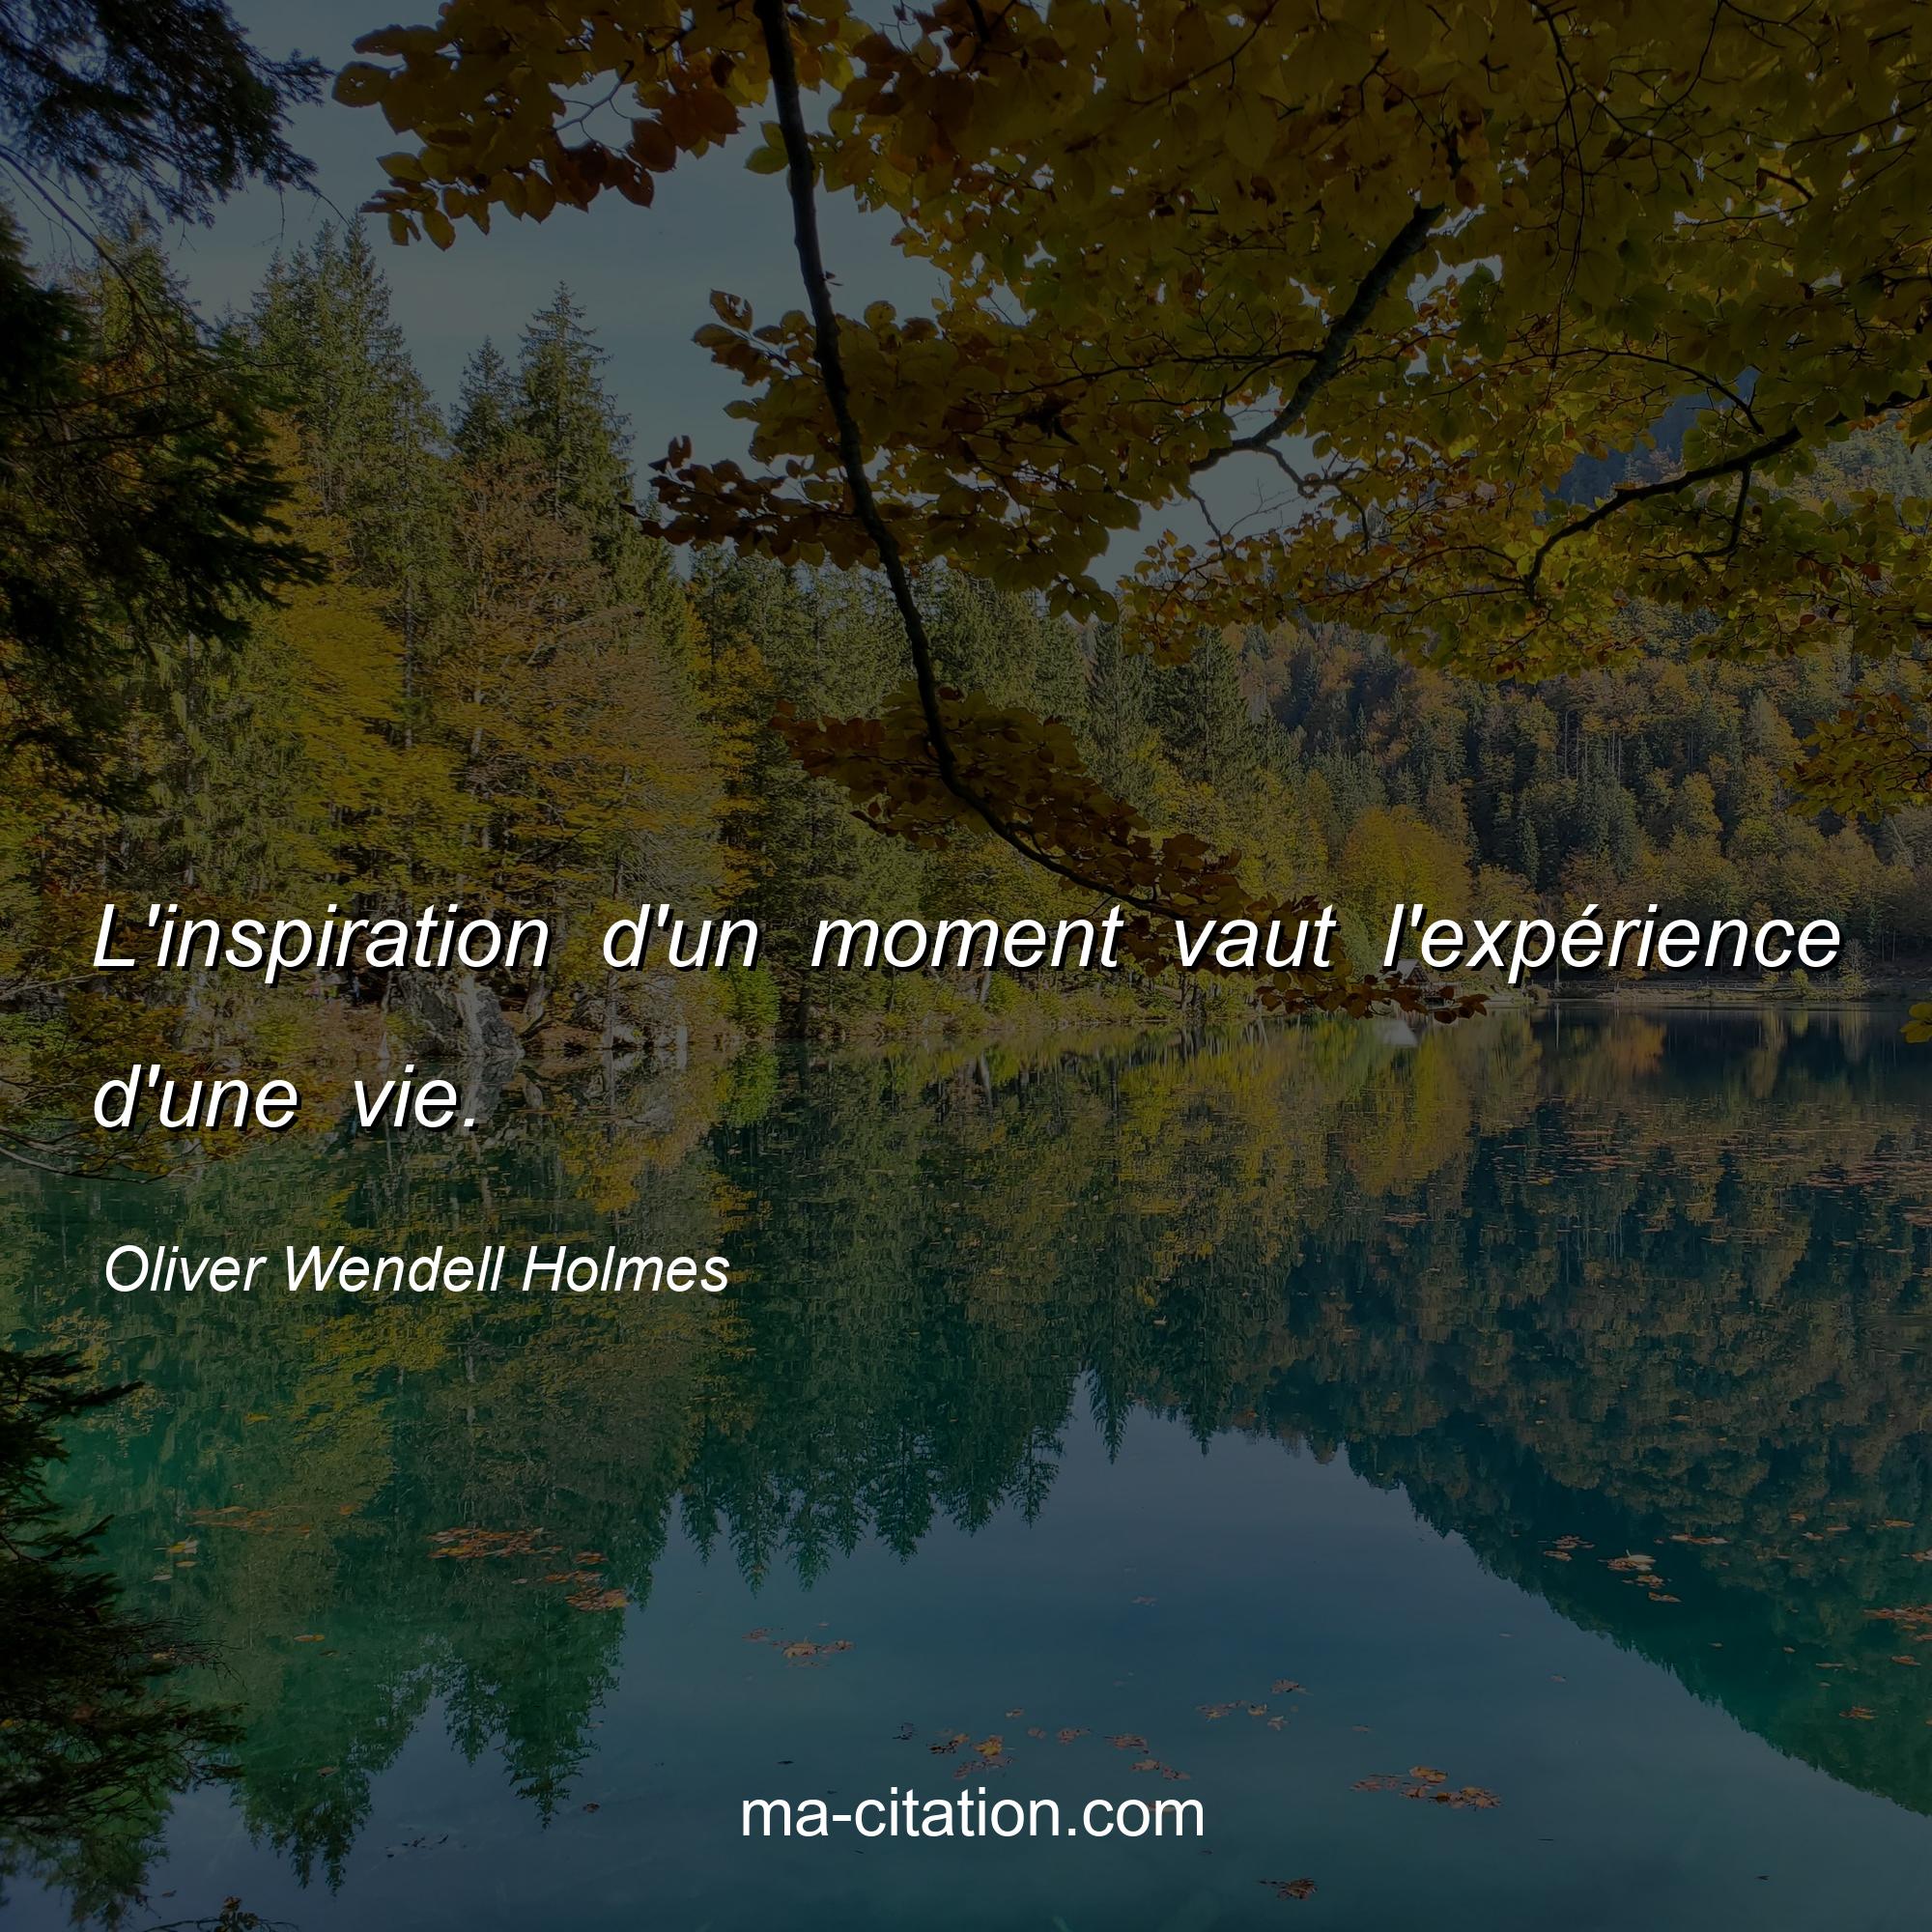 Oliver Wendell Holmes : L'inspiration d'un moment vaut l'expérience d'une vie.